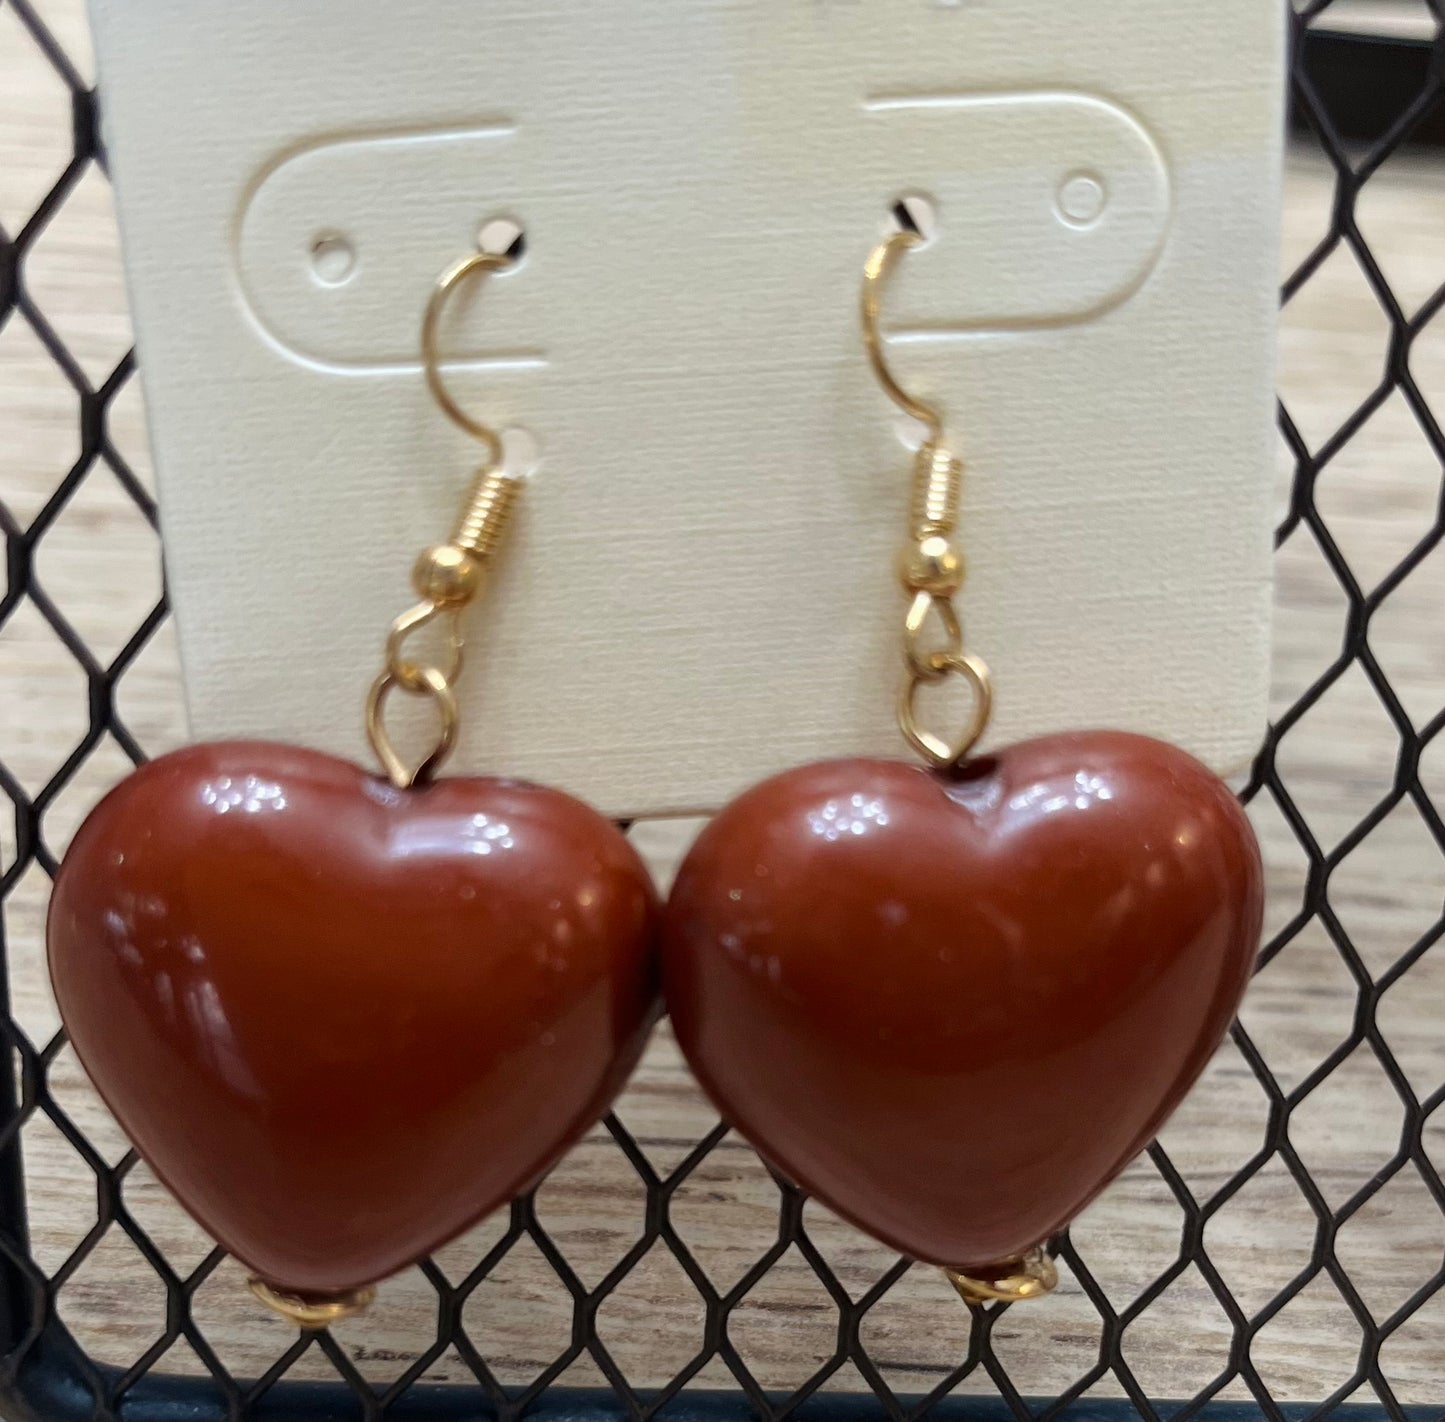 Dual Heart Earrings